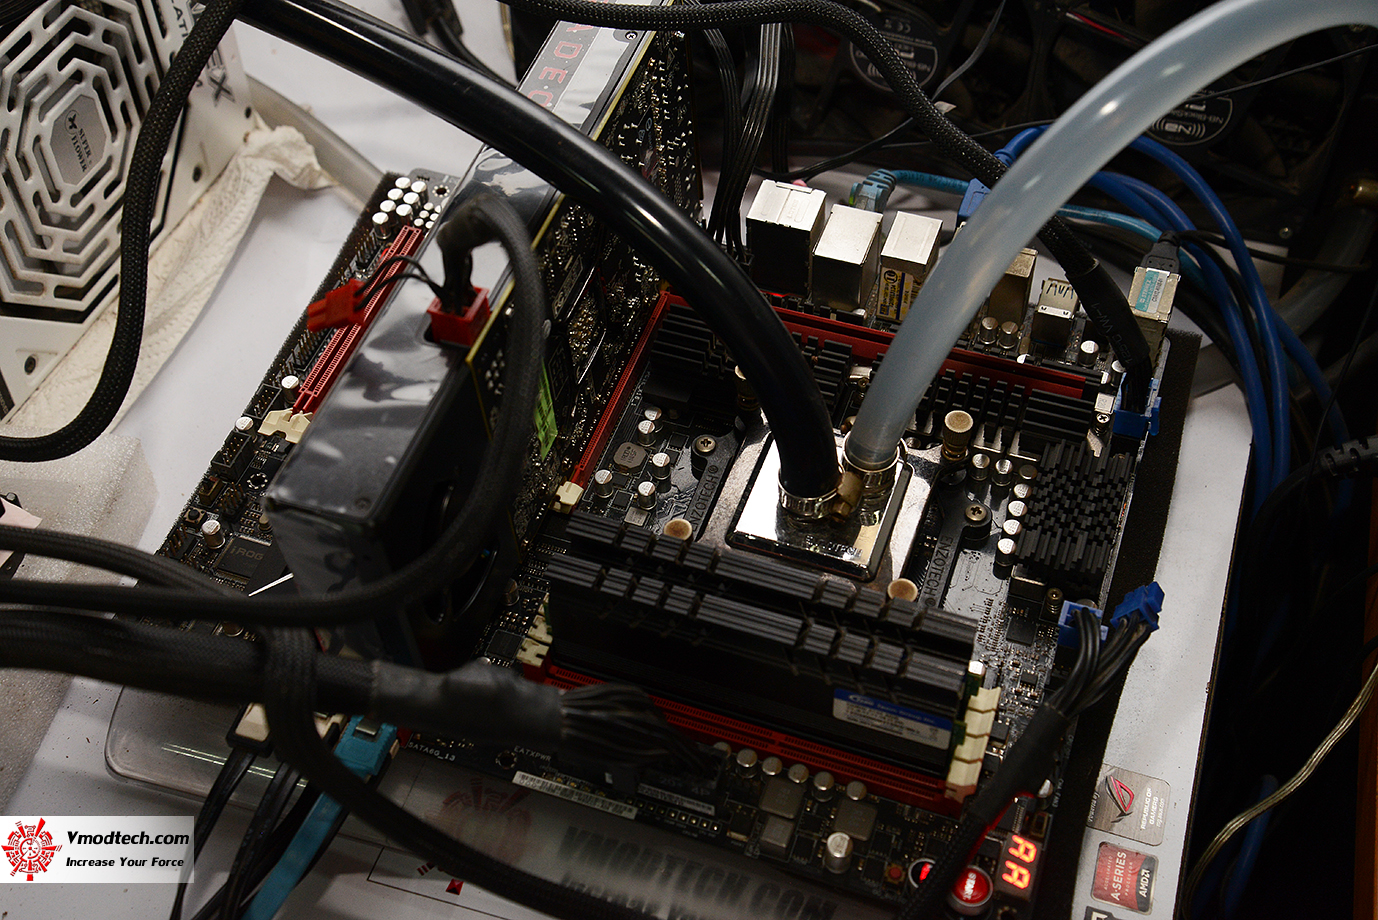 dsc 1022 AMD Radeon RX 480 New Driver AMD Radeon Software Crimson 16.7.1 Comparison Review